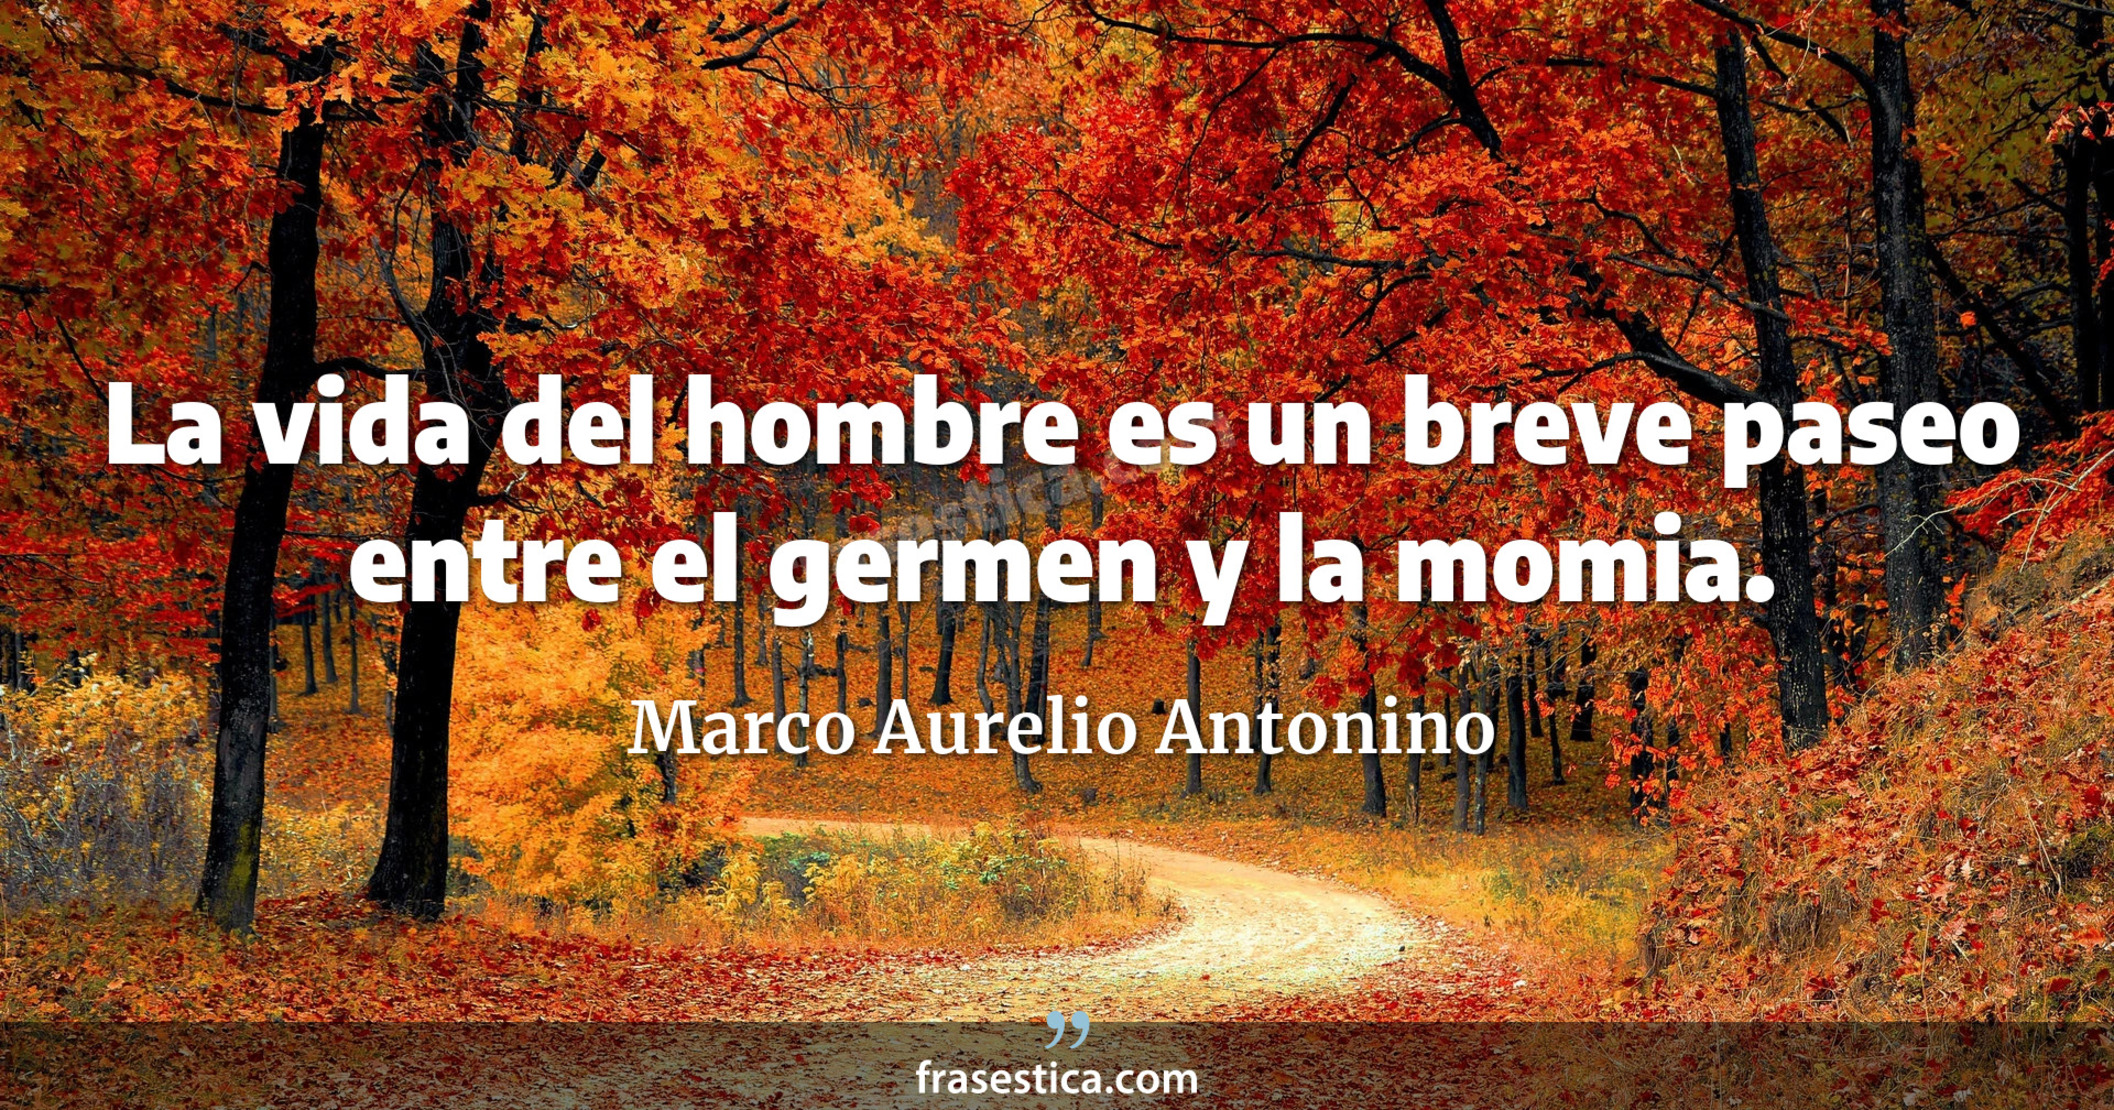 La vida del hombre es un breve paseo entre el germen y la momia. - Marco Aurelio Antonino